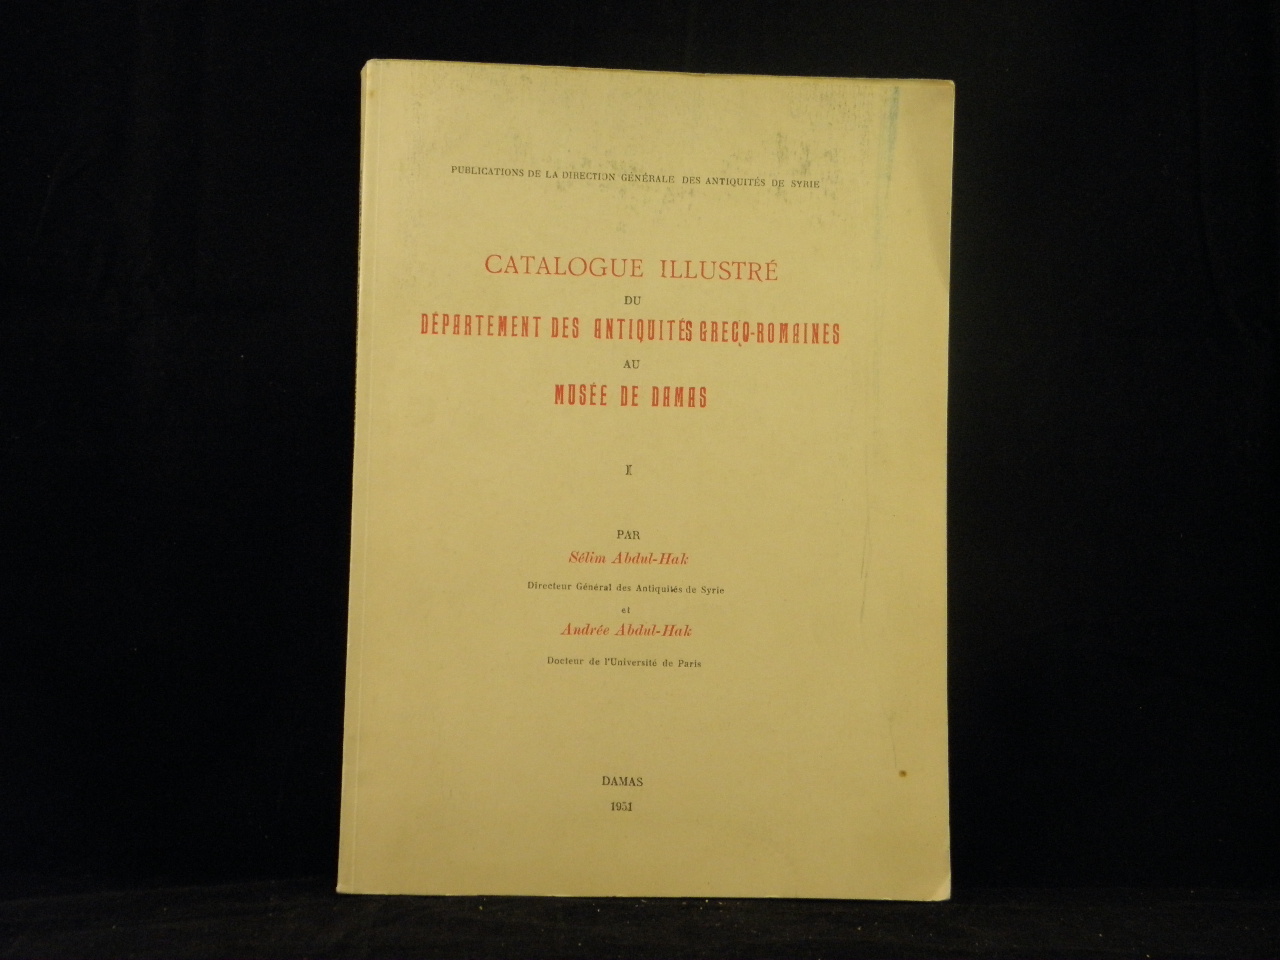 ABDUL-HAK, Slim + Andre: - Catalogue illustr du Dpartement des Antiquits Greco-Romaines au Muse de Damas. Bd. 1.